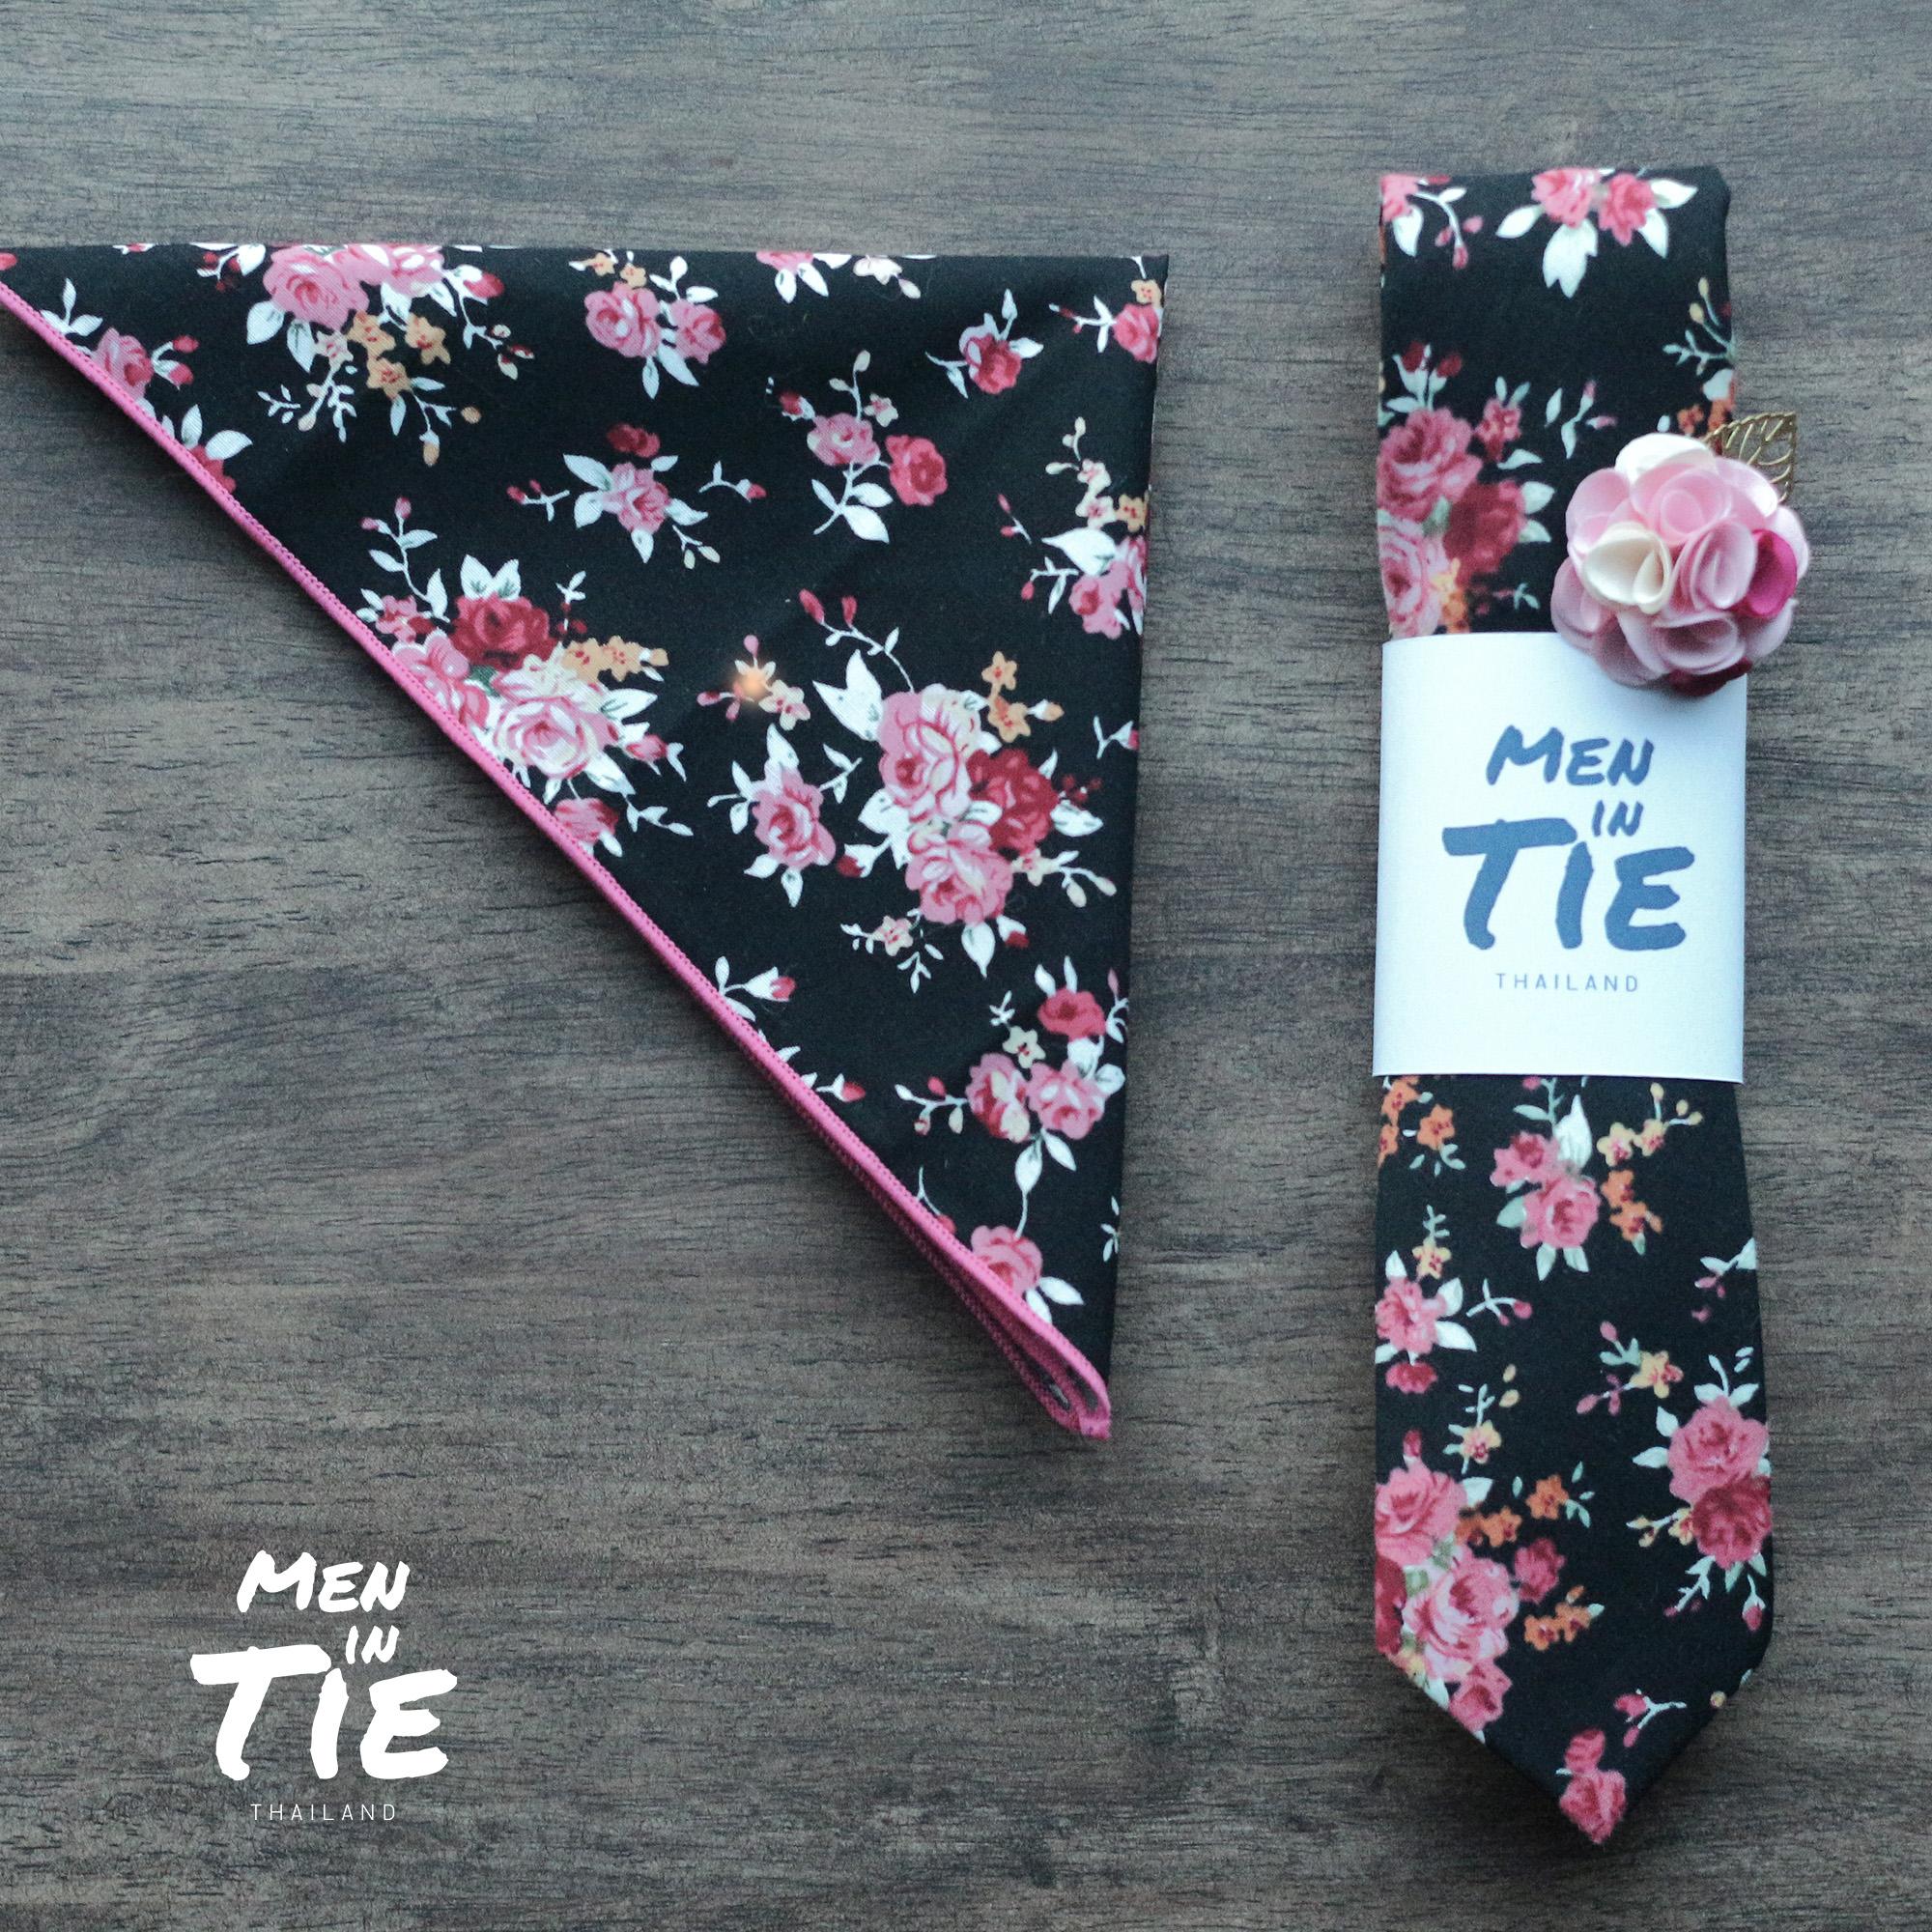 เซ็ทเนคไทคู่ ผ้าเช็ดหน้า ลาเพลพิน ลายดอกไม้ Floral tie with Pocket square and Lapel pin